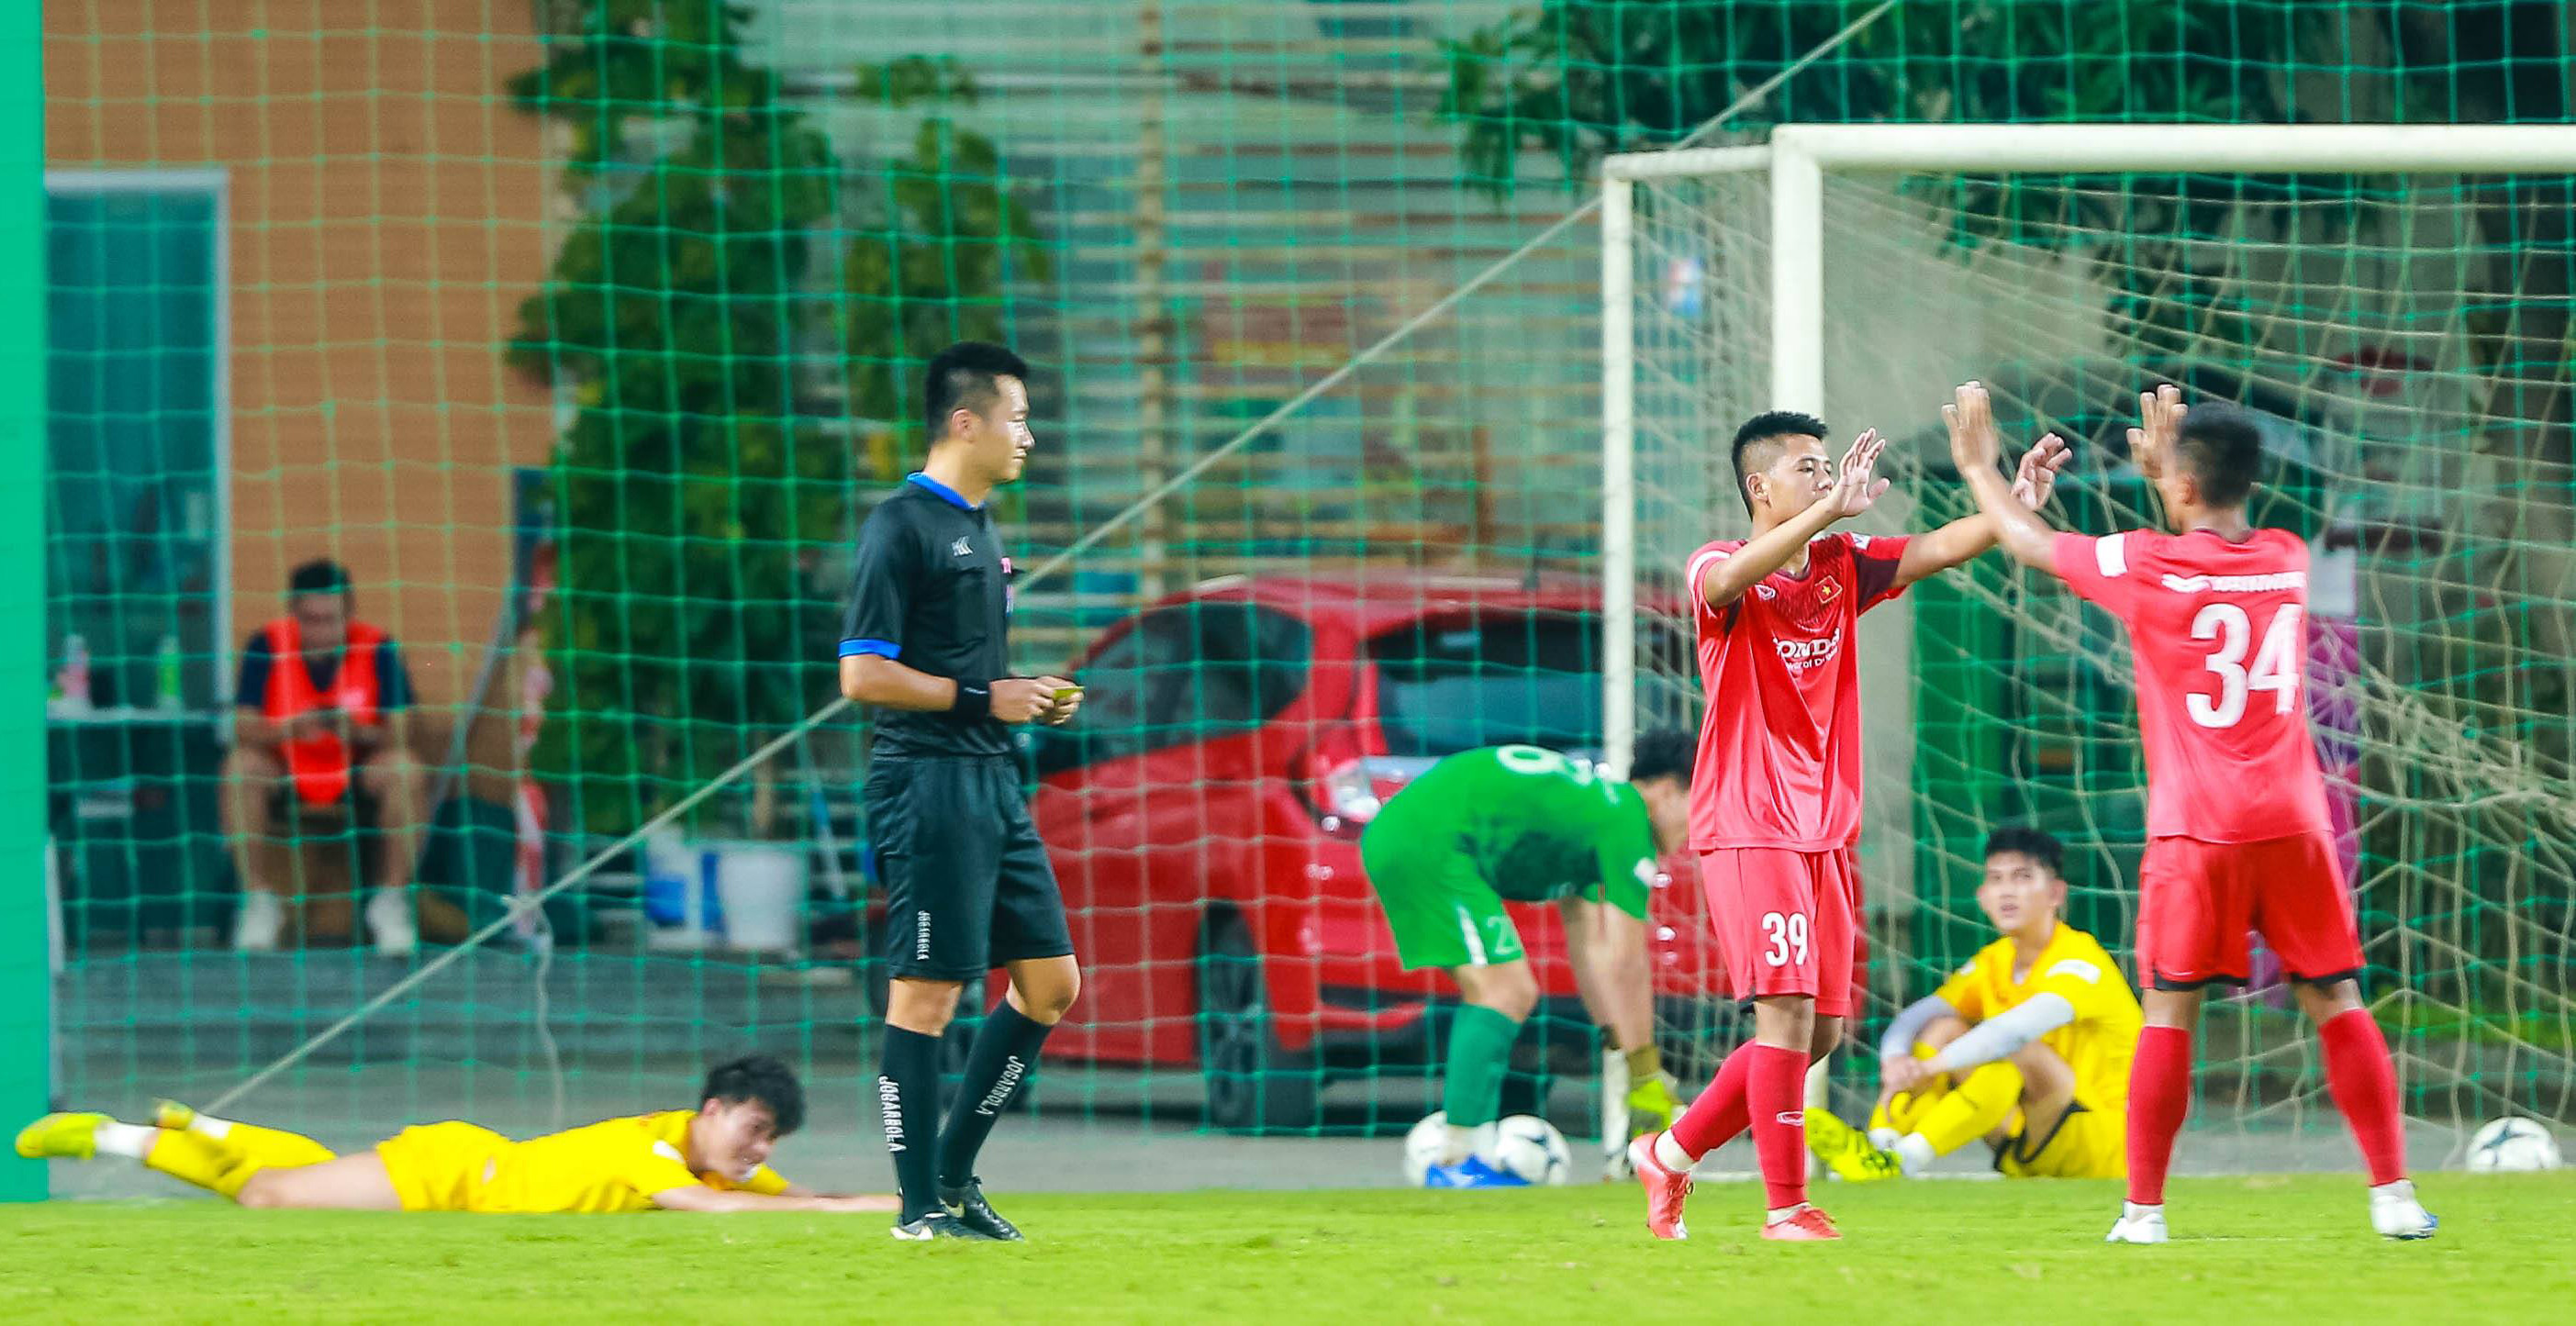 Tiền vệ Trần Ngọc Ánh (SLNA) ghi bàn trong trận đấu nội bộ tại U22 Việt Nam. Ảnh: Hải Hoàng